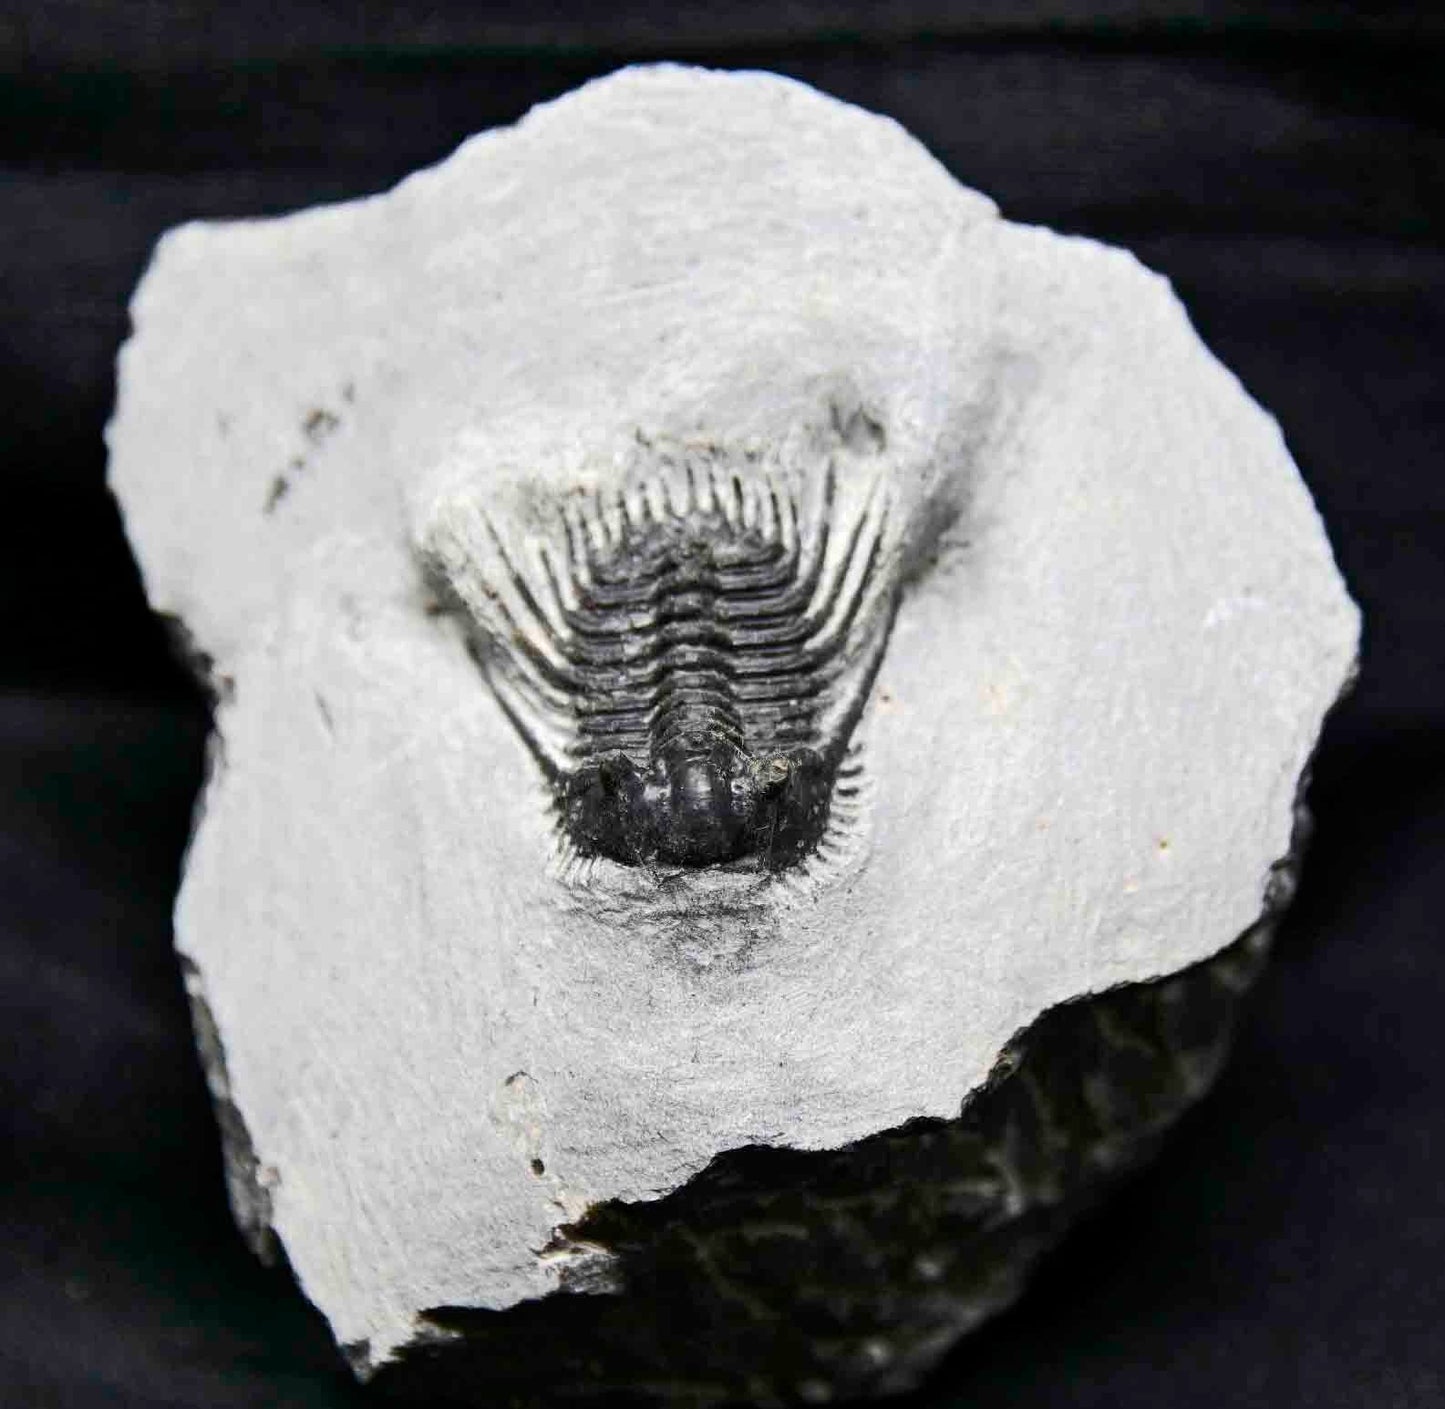 Leonaspis trilobite